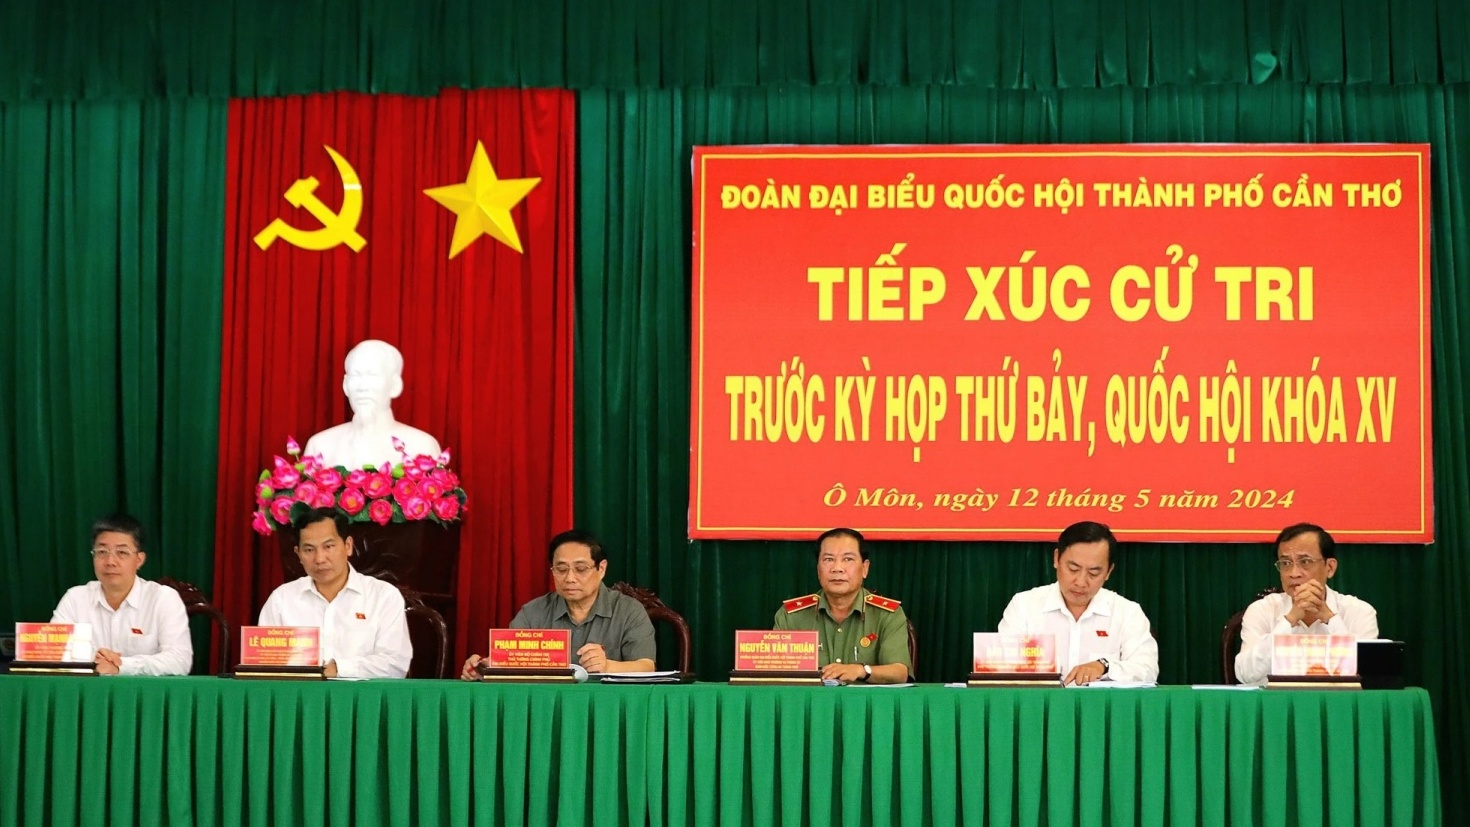 Thủ tướng Phạm Minh Chính thông tin tới cử tri về tiến độ chuỗi dự án Lô B - Ô Môn